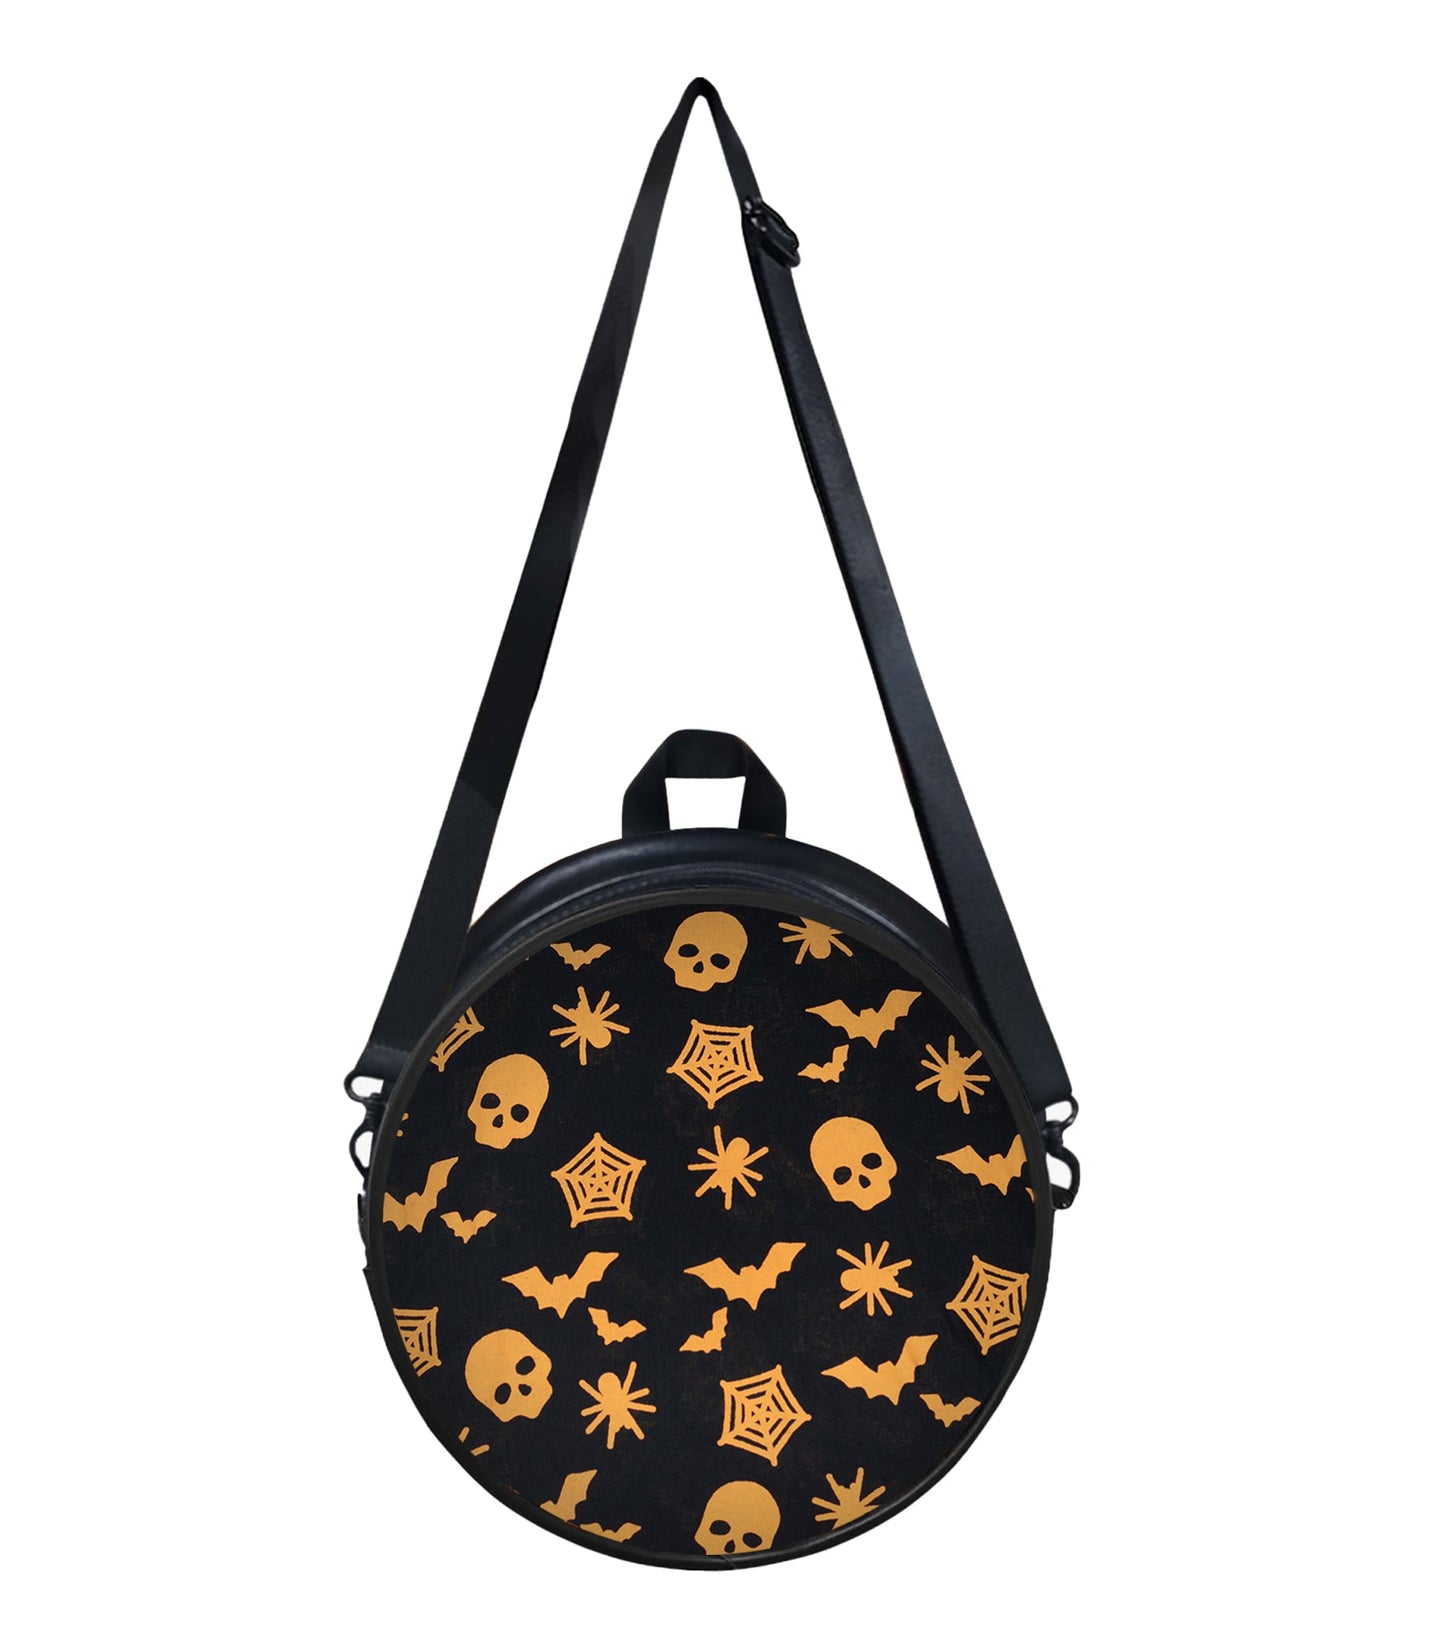 Bat Skull  Printed Fabric Handbags or Bags